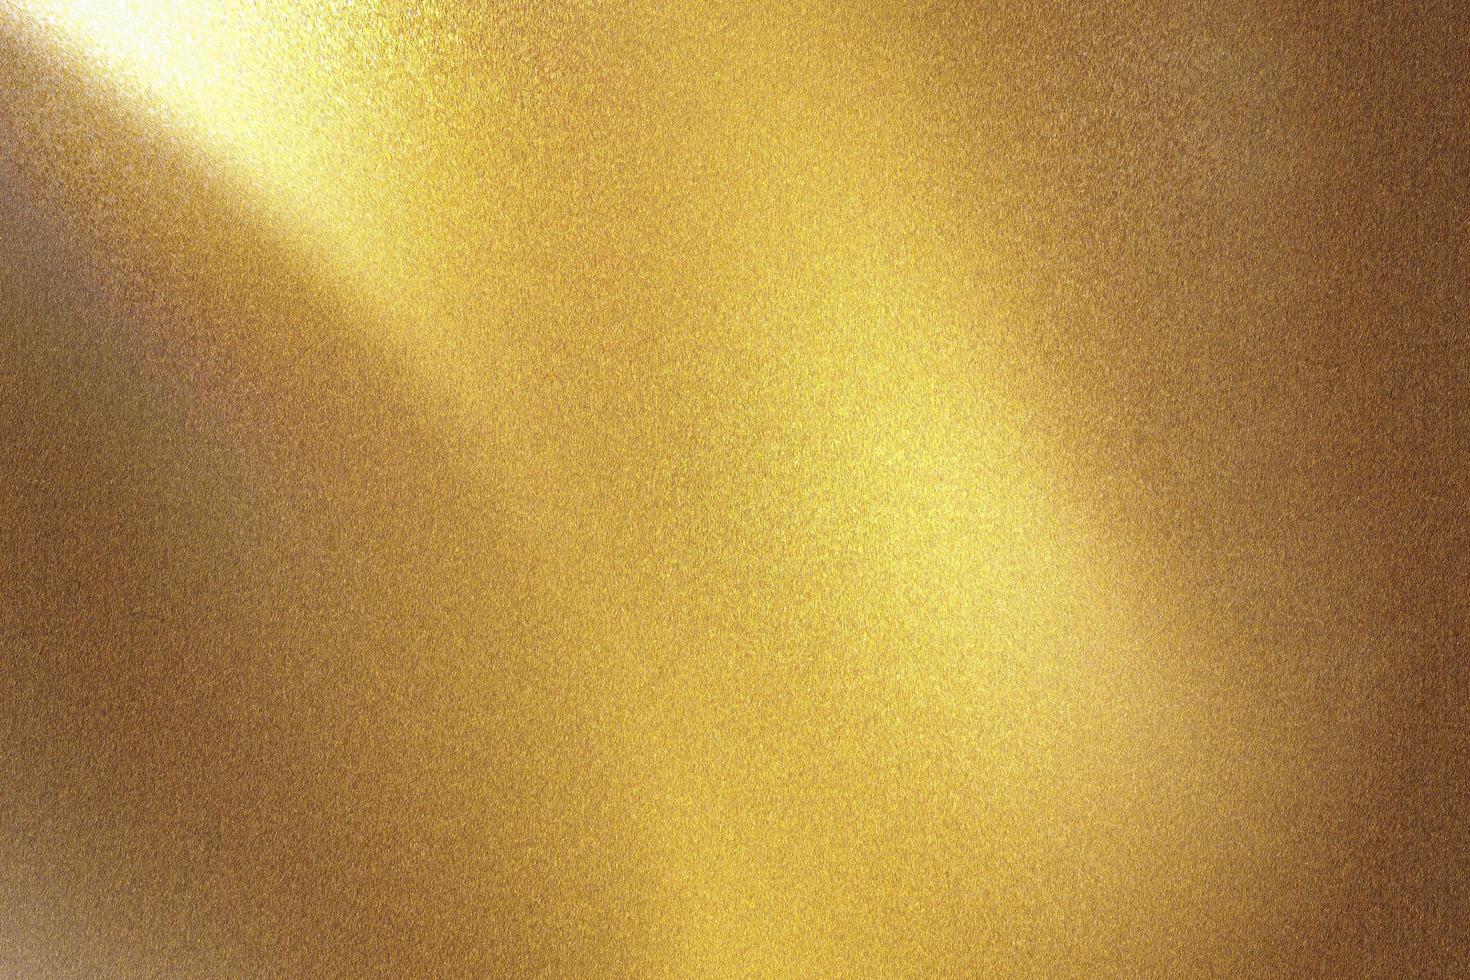 pared metálica dorada cepillada con superficie rayada, fondo de textura abstracta foto